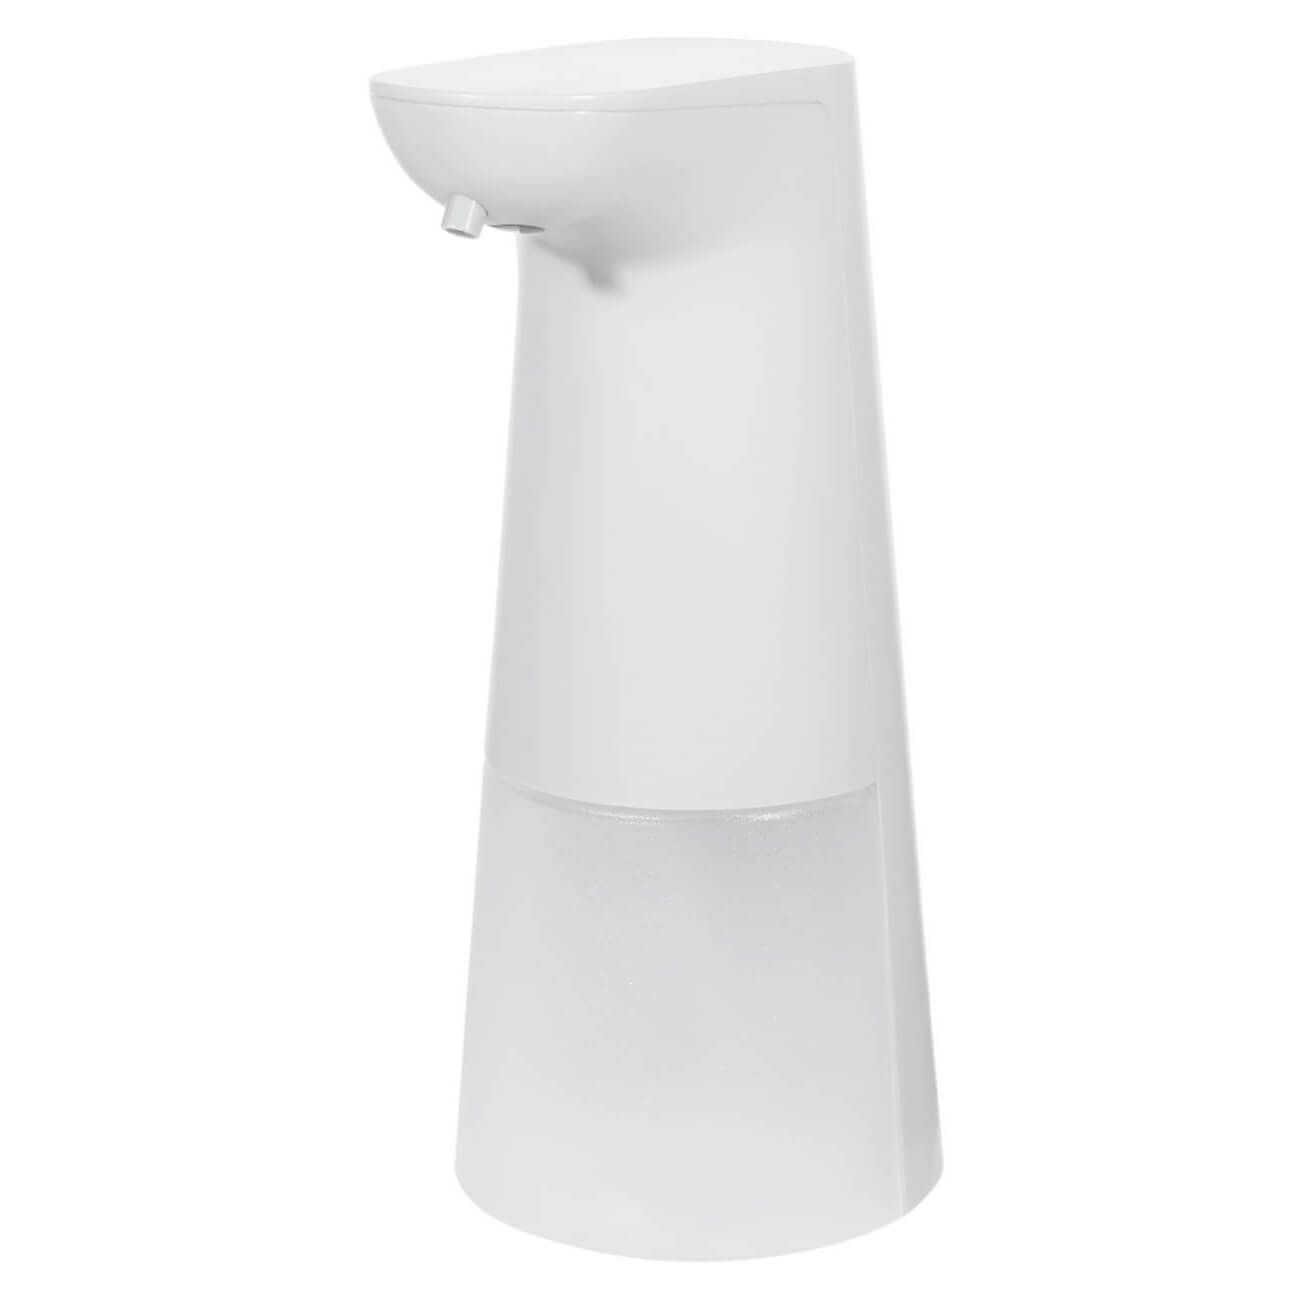 Диспенсер для жидкого мыла, 250 мл, сенсорный, для пены, пластик, белый, Smile диспенсер для туалетной бумаги nofer автоматический пластик белый